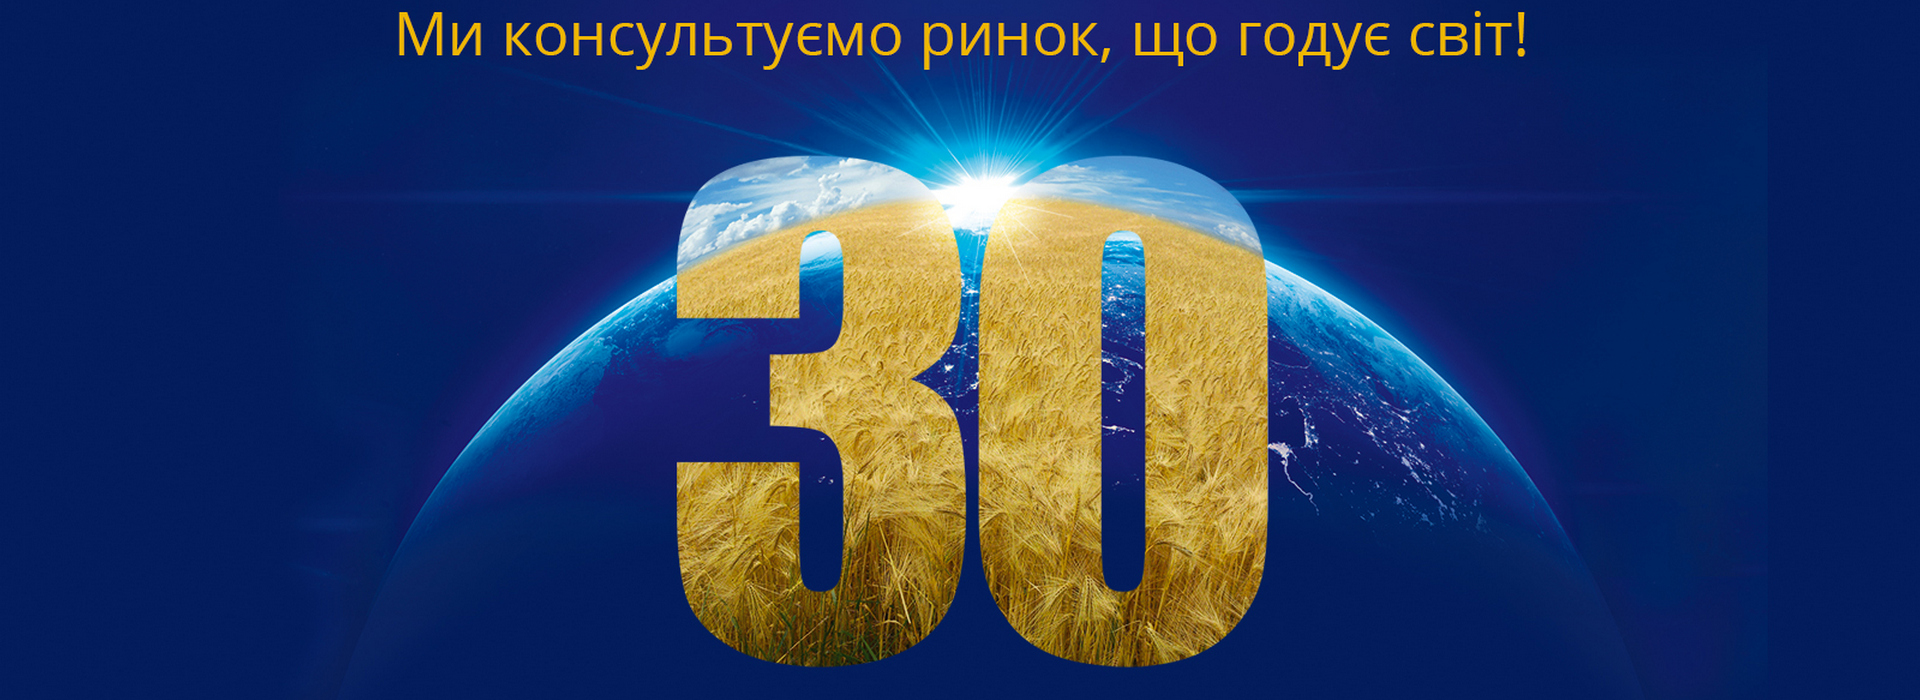 Цього року УкрАгроКонсалт відзначає важливу дату в своїй історії, а саме – 30-річчя компанії!